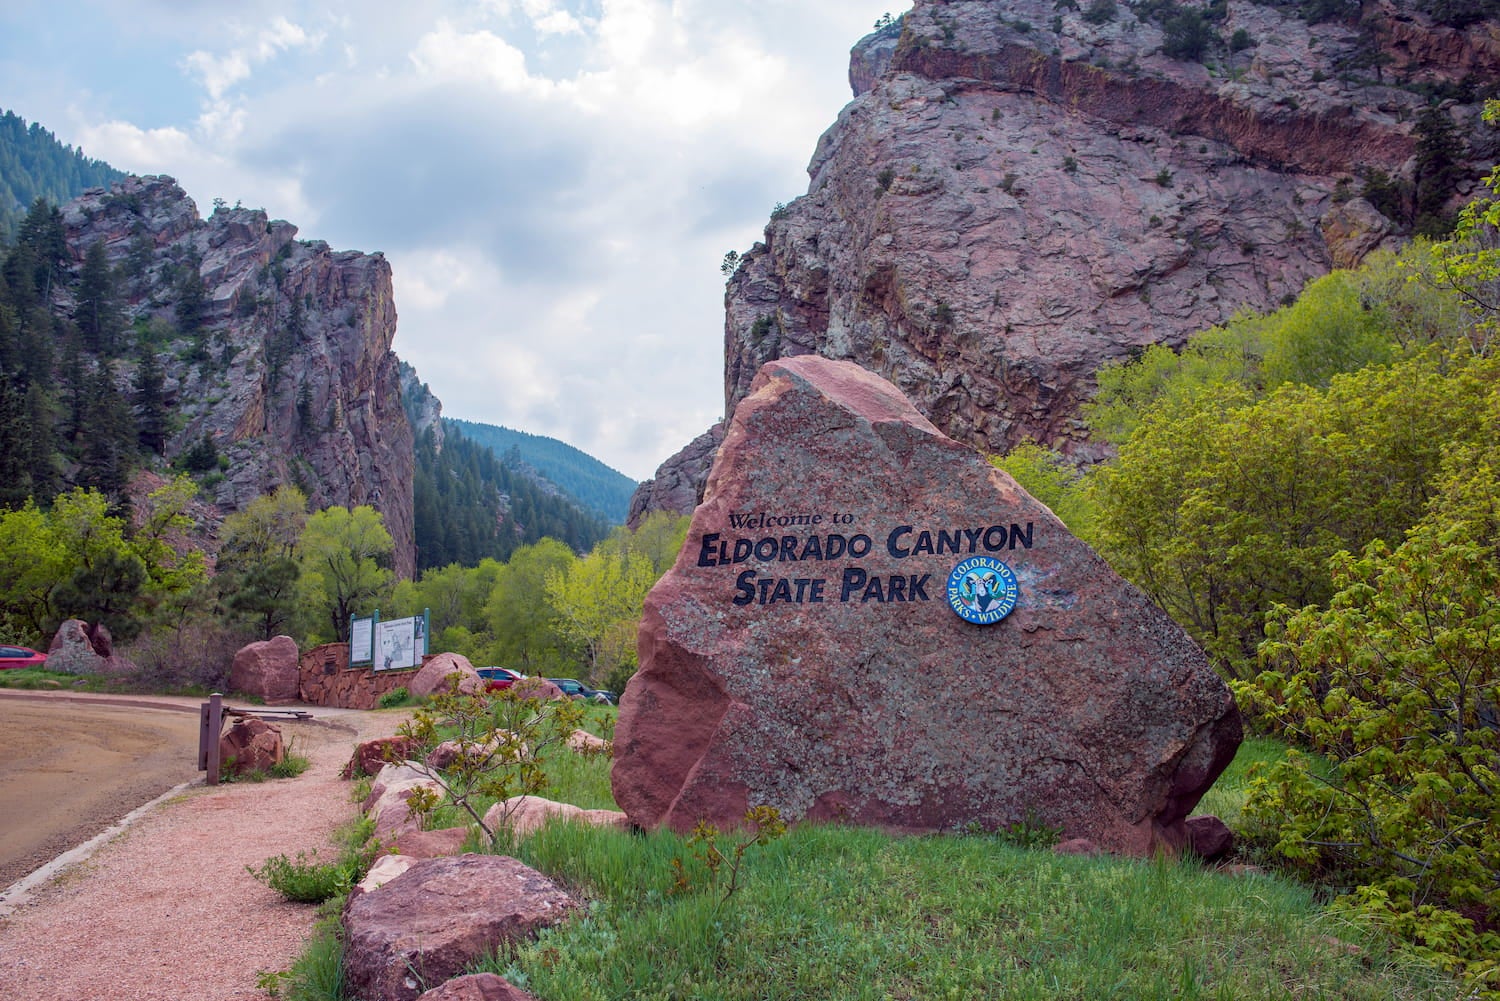 sign for Eldorado Canyon State Park entrance